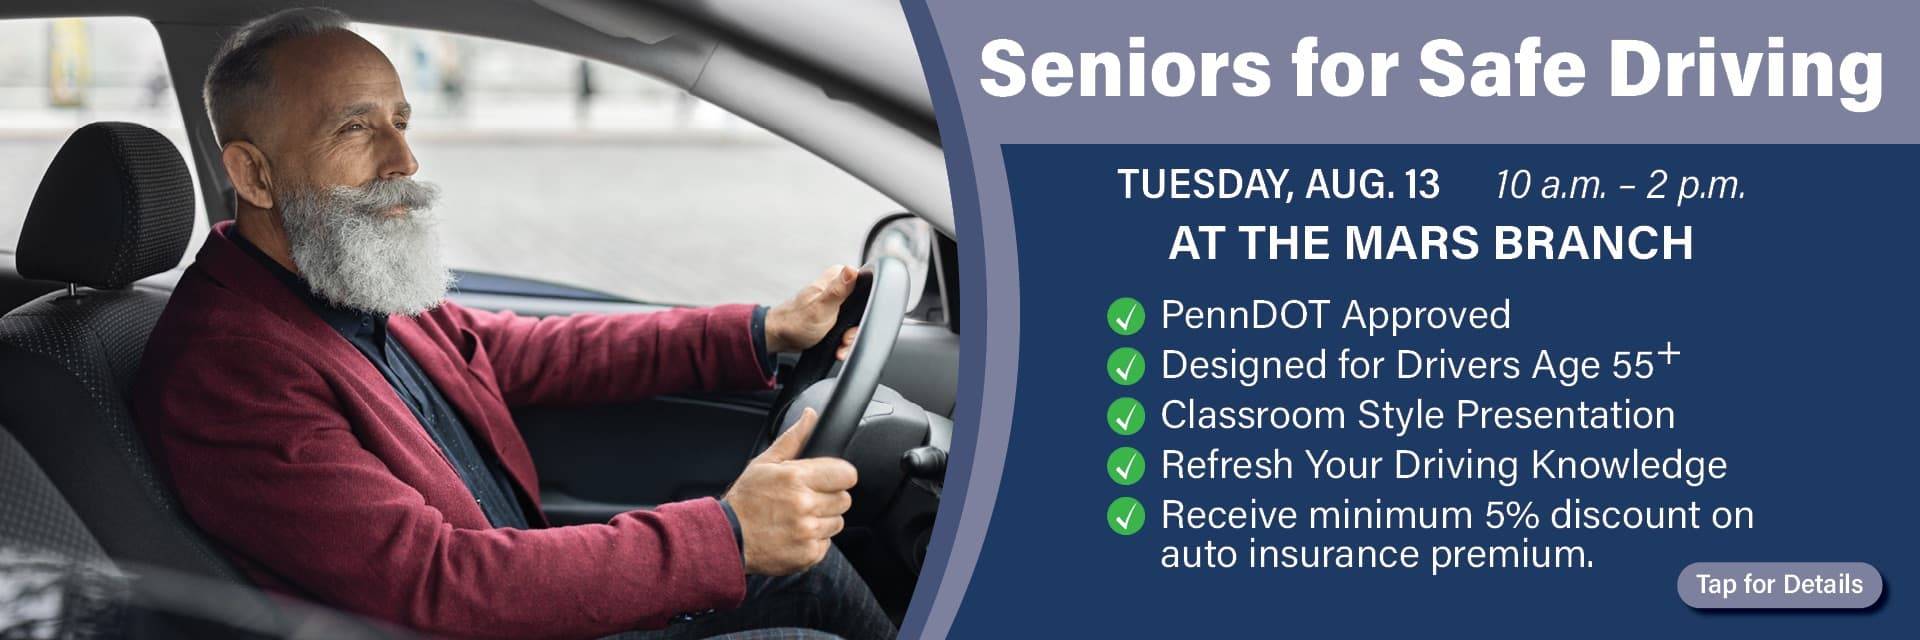 Register For Senior Safe Driving